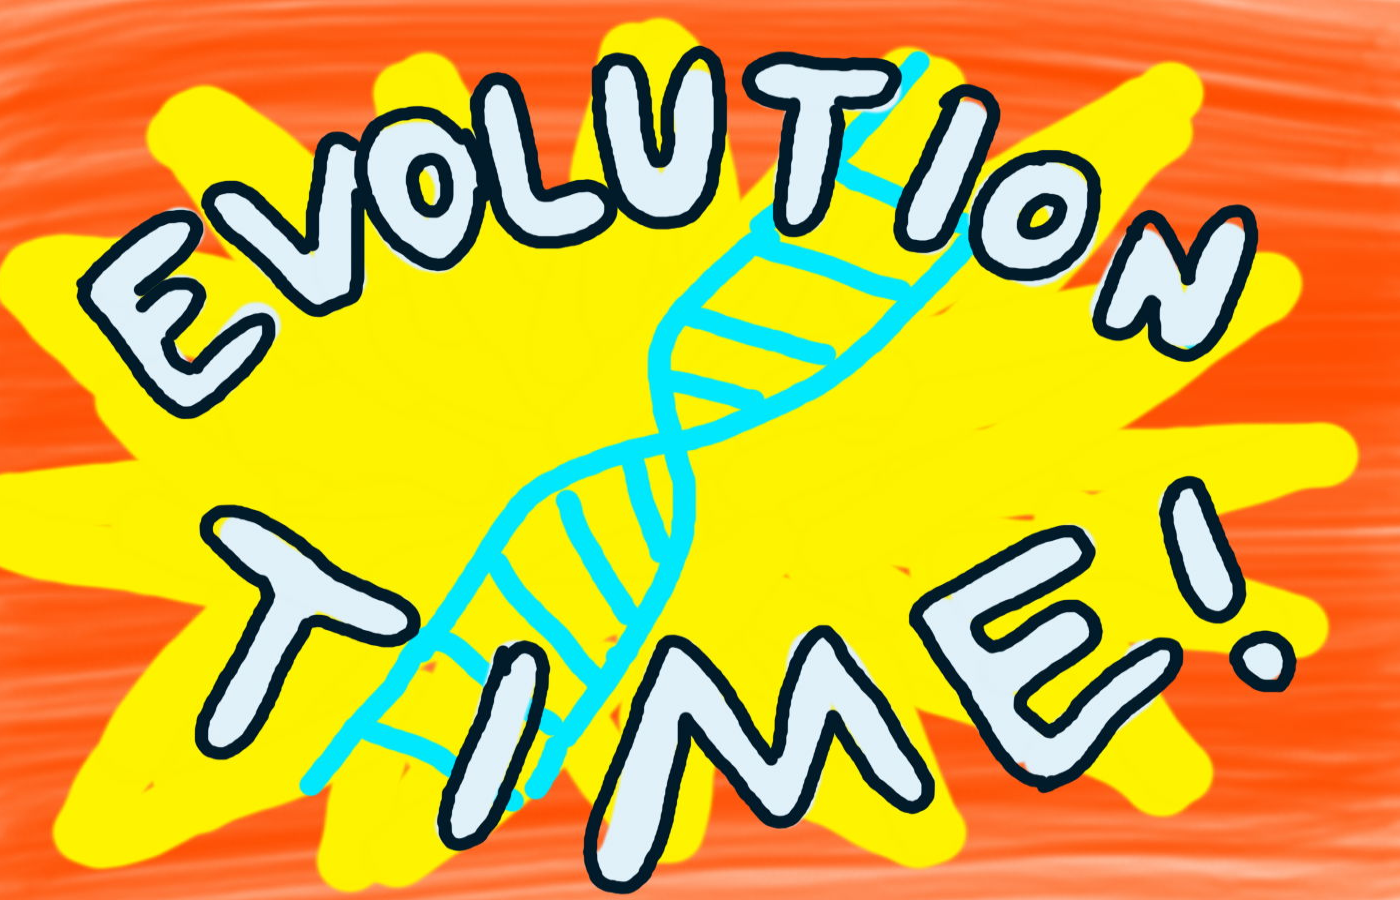 Evolution Time!